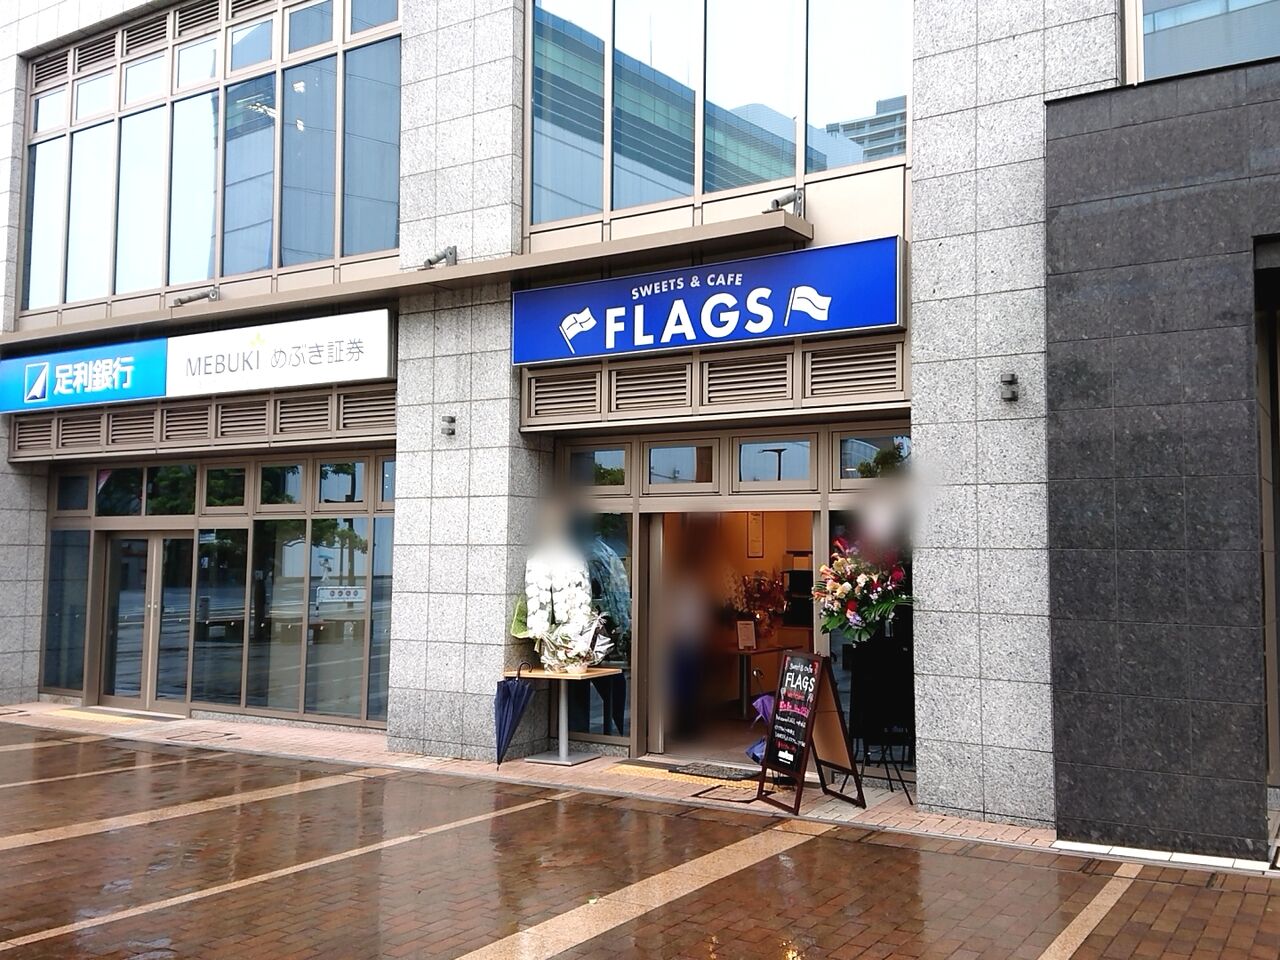 馬場通りにスイーツ カフェ Flags フラッグス がオープンしてる うつのみや通信 栃木県宇都宮市の地域情報サイト